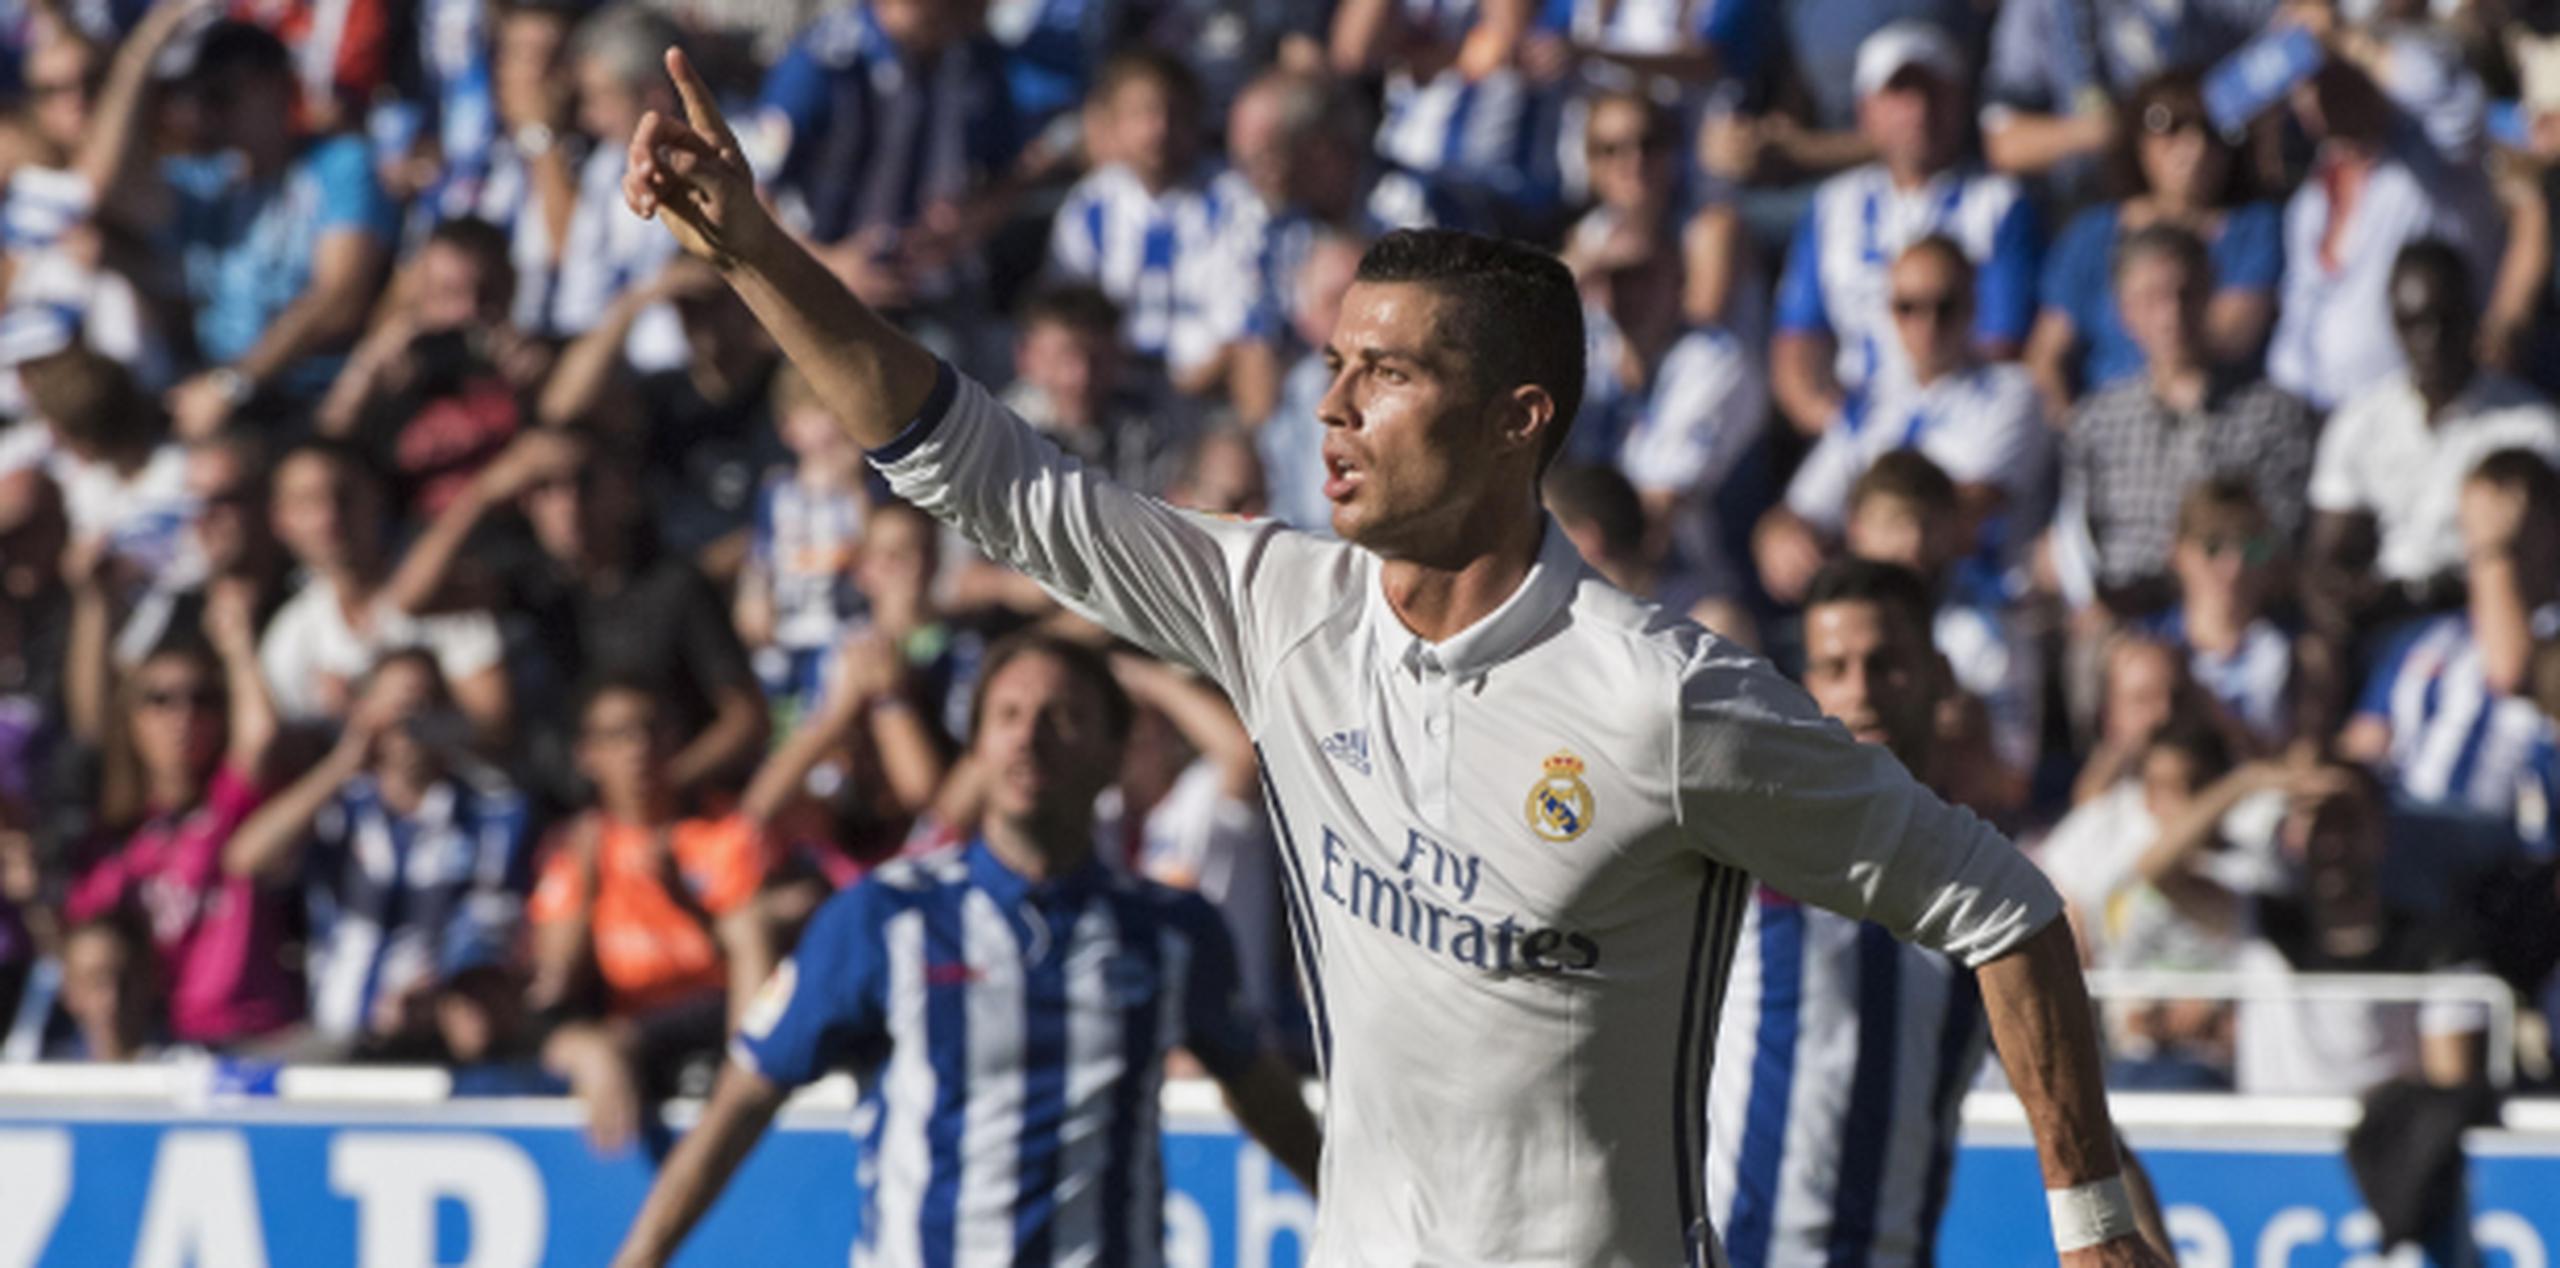 El delantero portugués del Real Madrid Cristiano Ronaldo celebra el gol marcado ante el Alavés. (Agencia EFE)